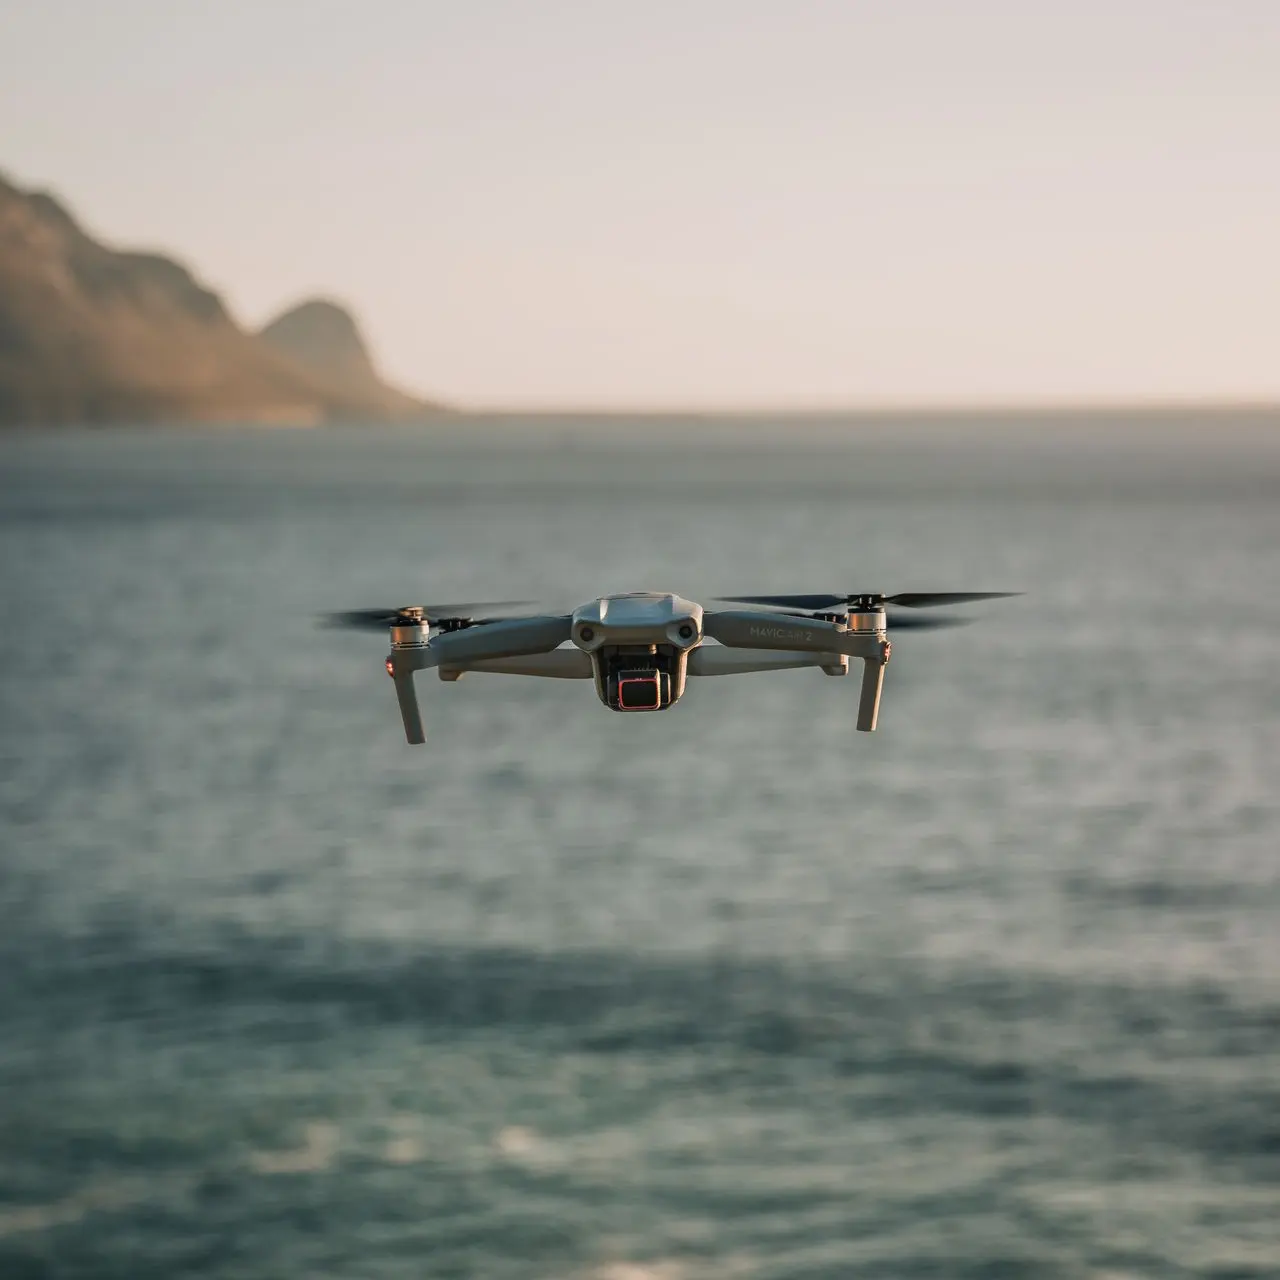 Tournage drone télépilote professionnel captation aérienne